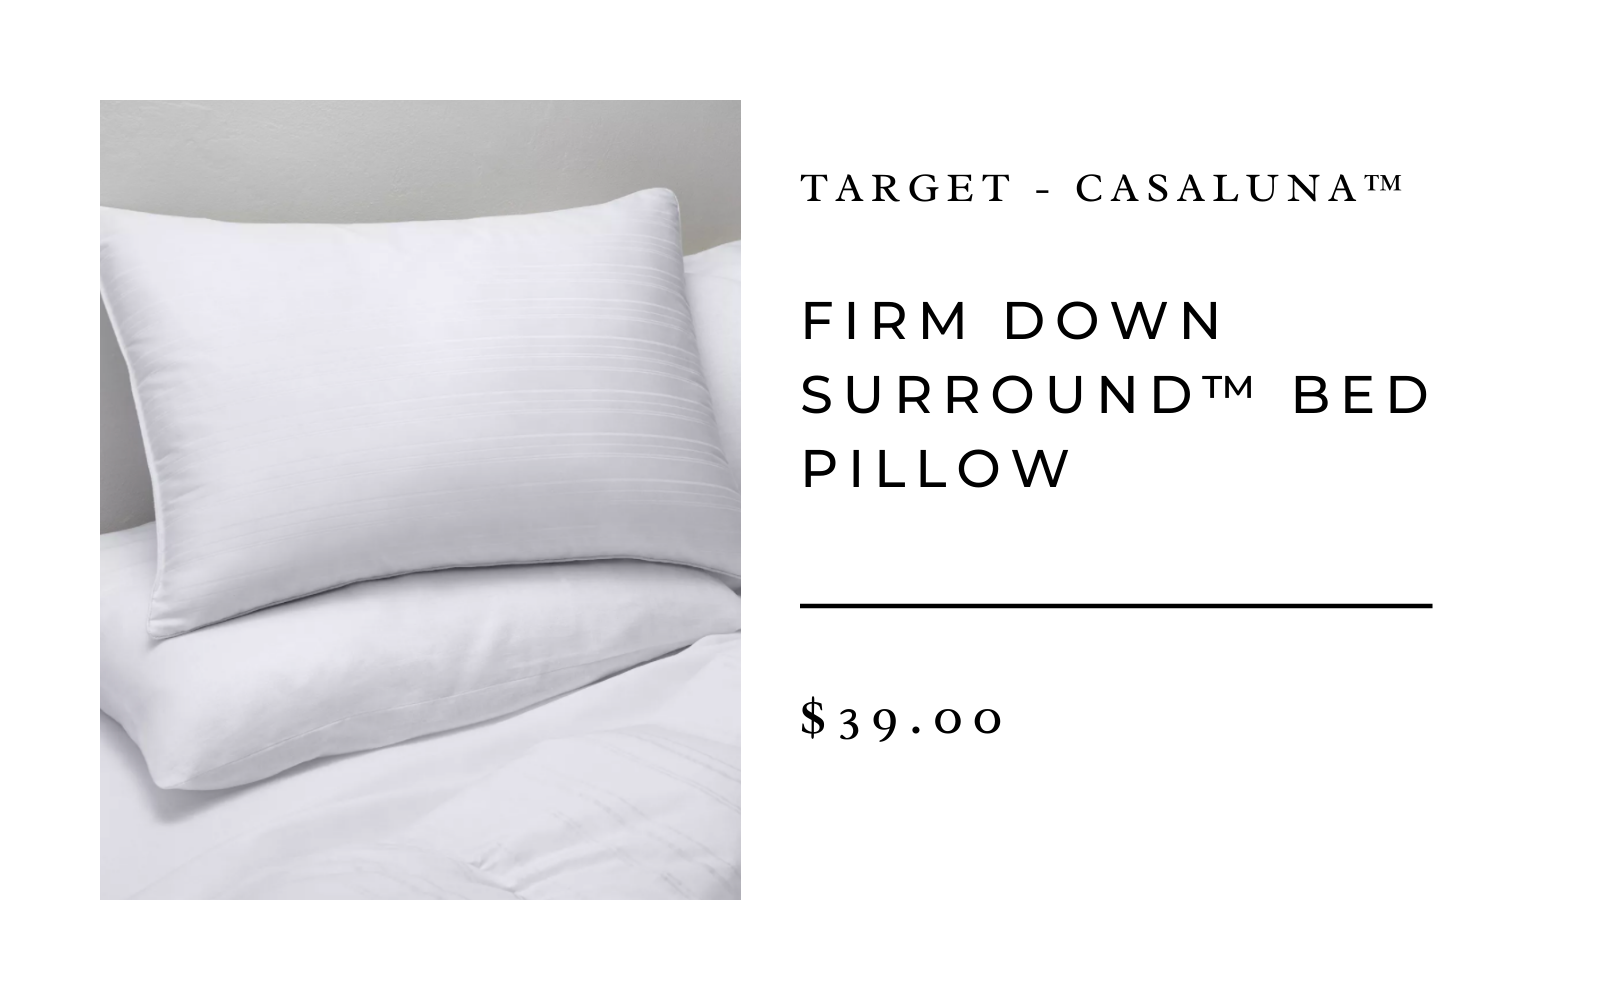 Target Casaluna Firm Down Surround Bed Pillow